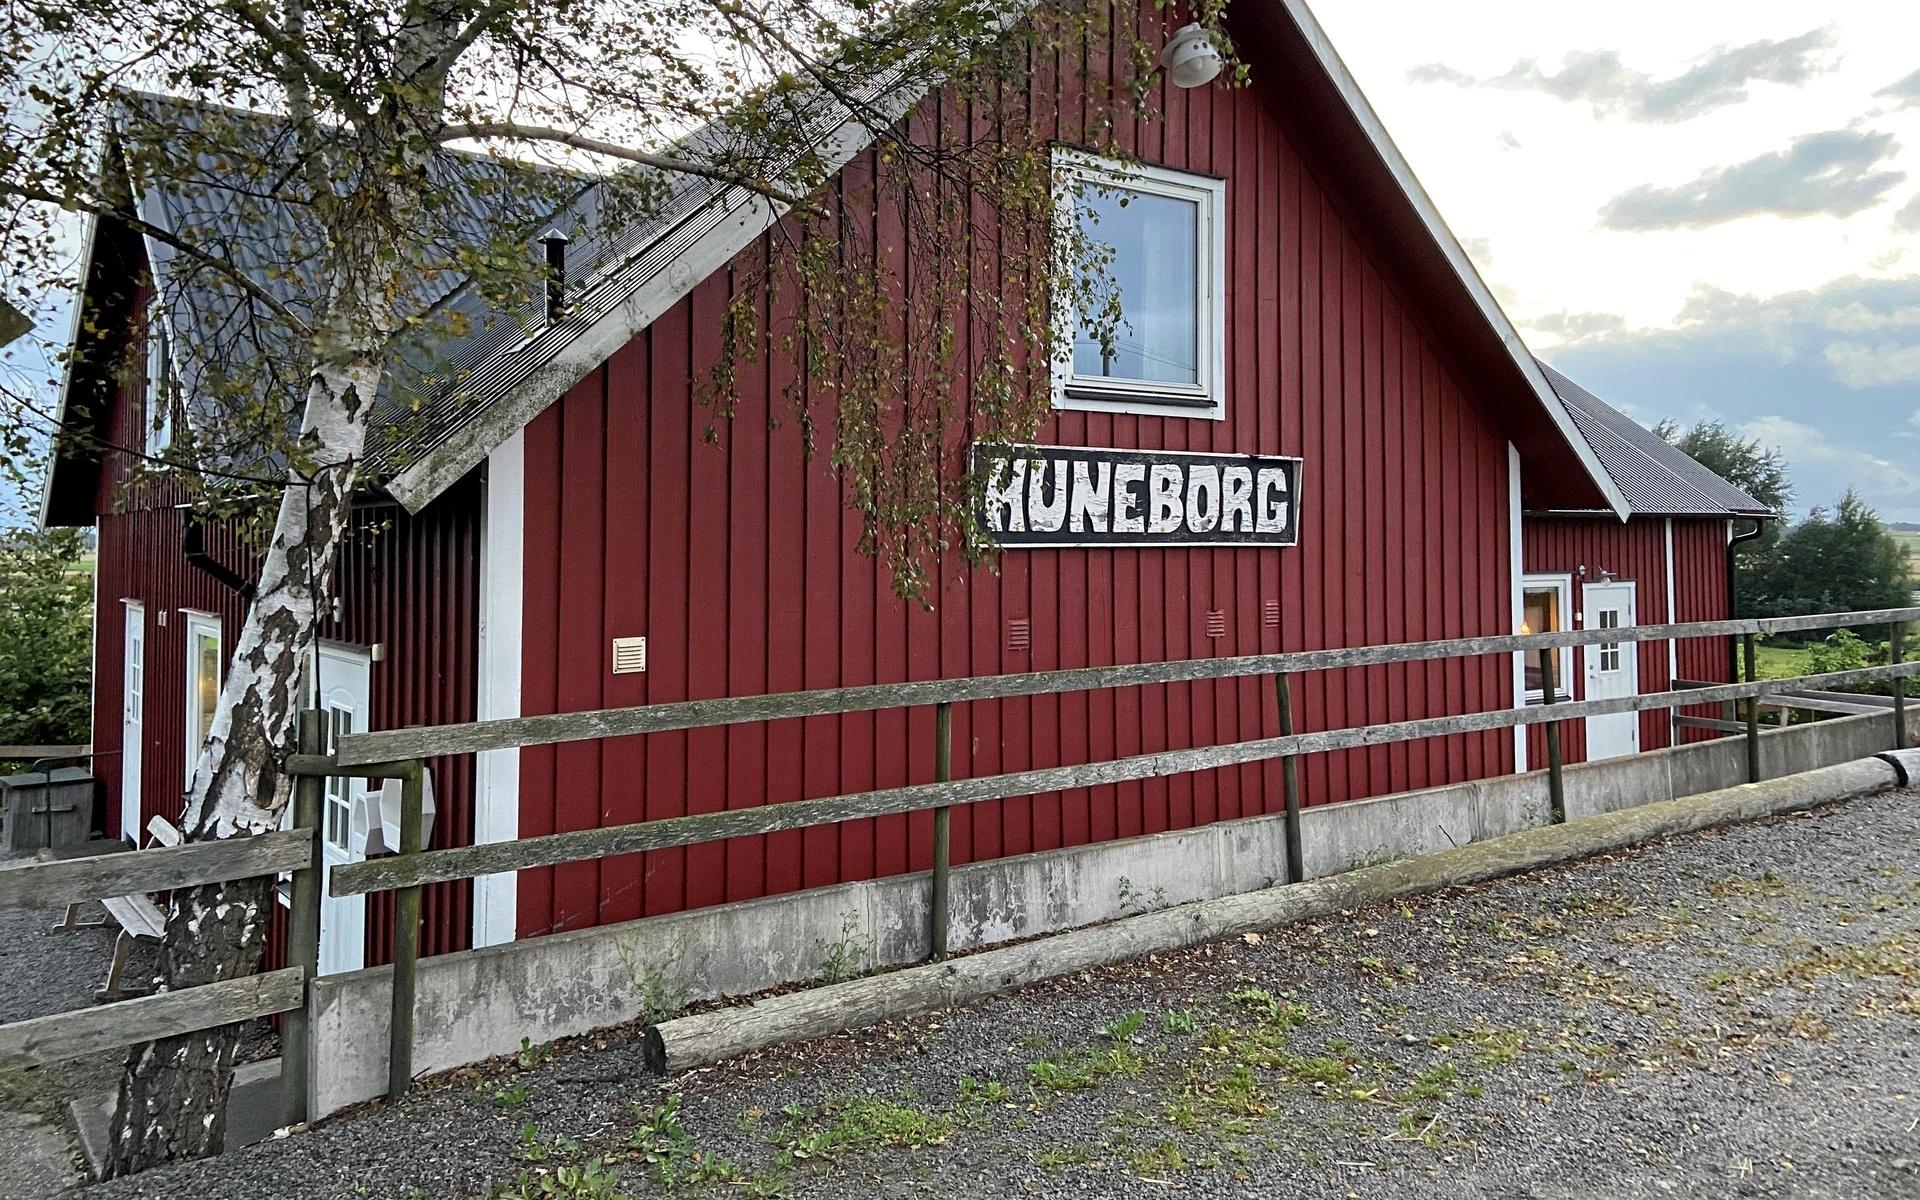 Hembygdsföreningen i Hunnestad har gått in och sponsrat loppisen med gratis hyra för lokalen Huneborg.